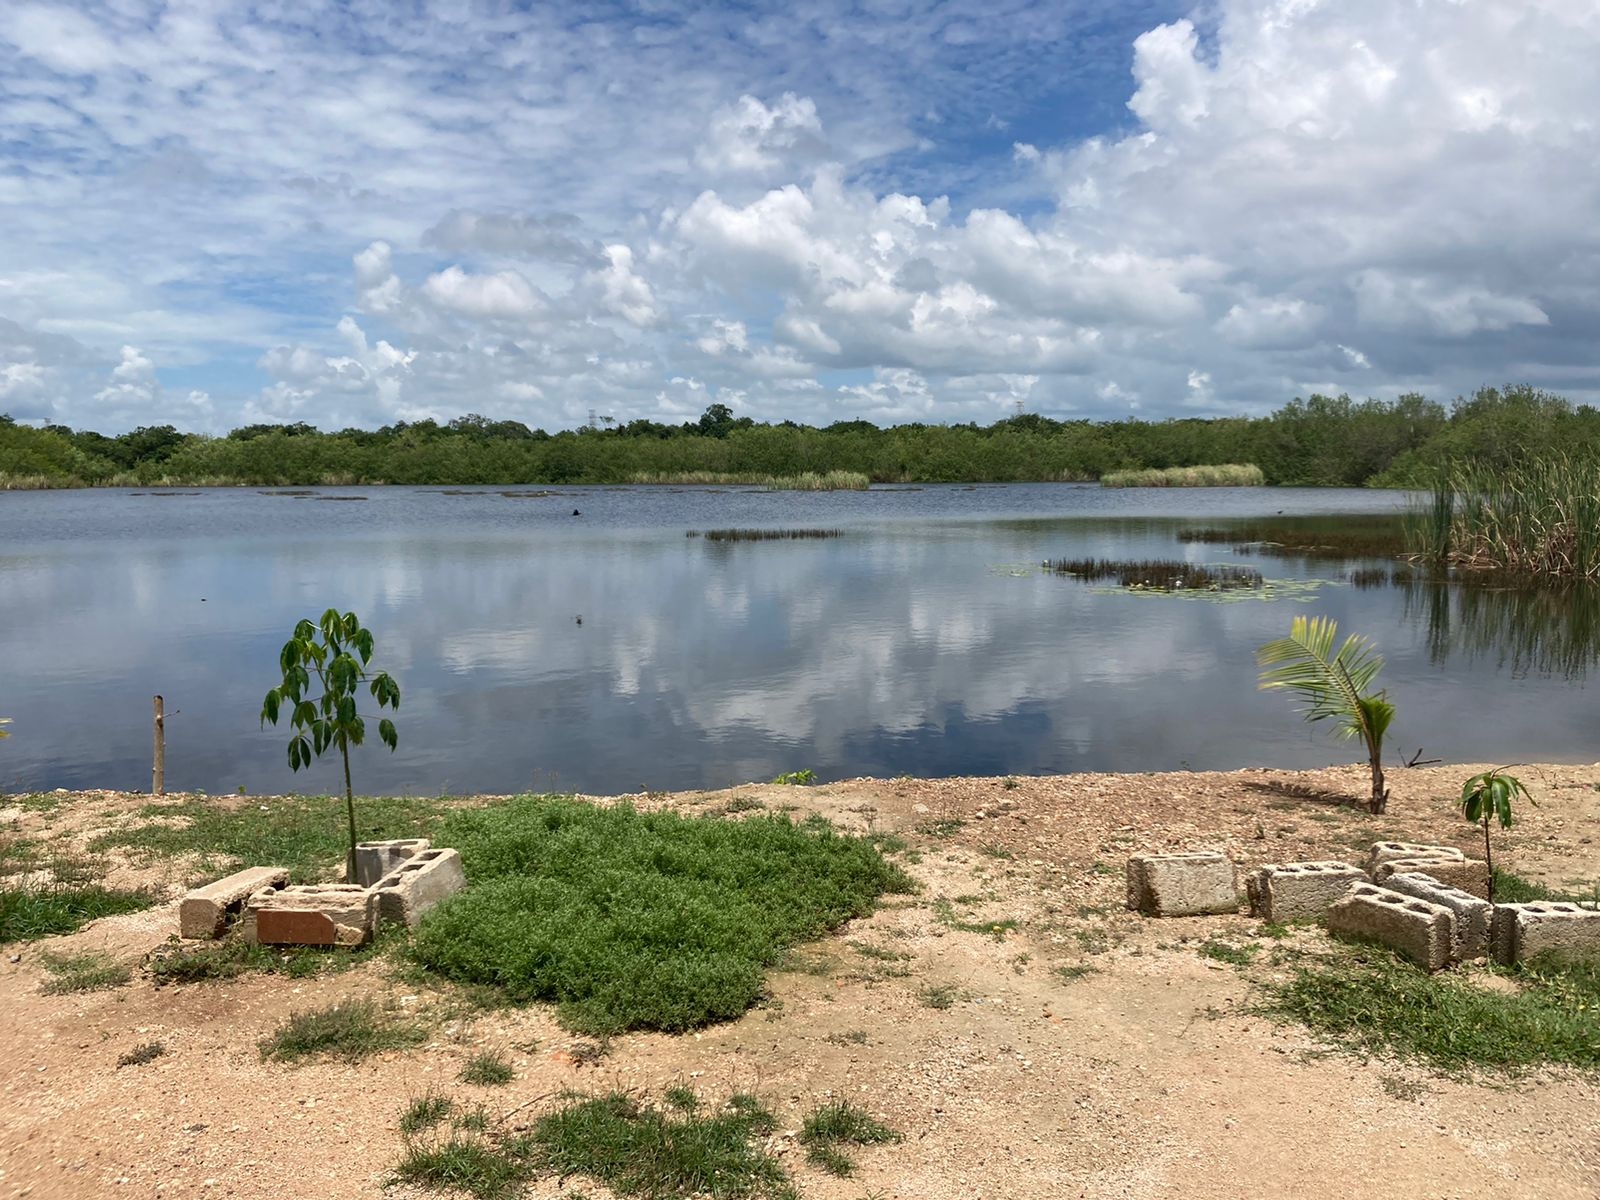 'La Sabana' presentó un aumento en el nivel del agua derivado a las lluvias causadas por la Onda Tropical 23 en la Zona Sur de Quintana Roo